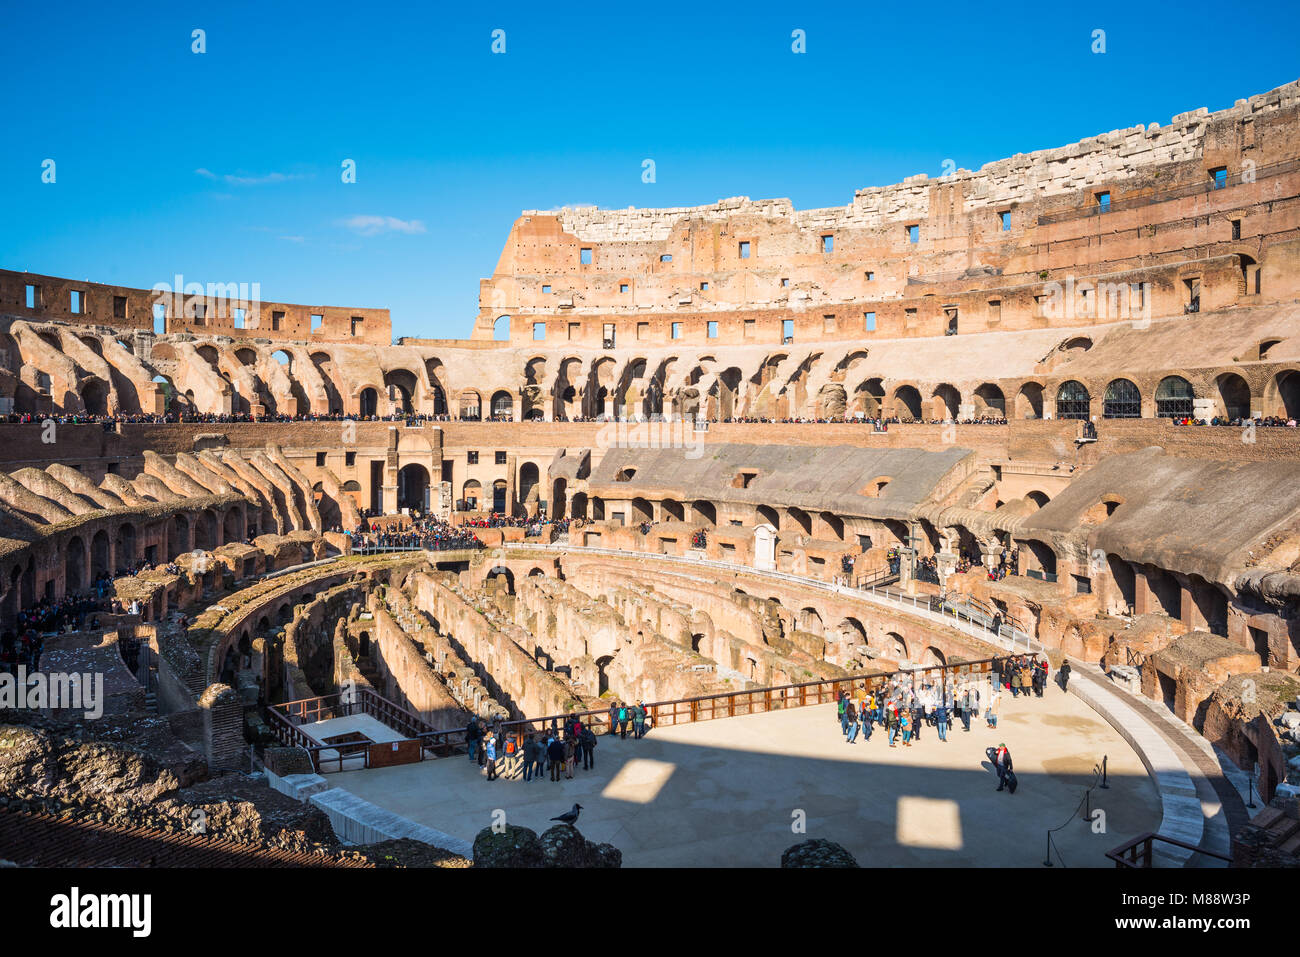 Large vue panoramique sur le Colisée ou Coliseum, également connu sous le nom de l'amphithéâtre Flavien, avec le sous-sol hypogée, Rome. Le Latium. L'Italie. Banque D'Images